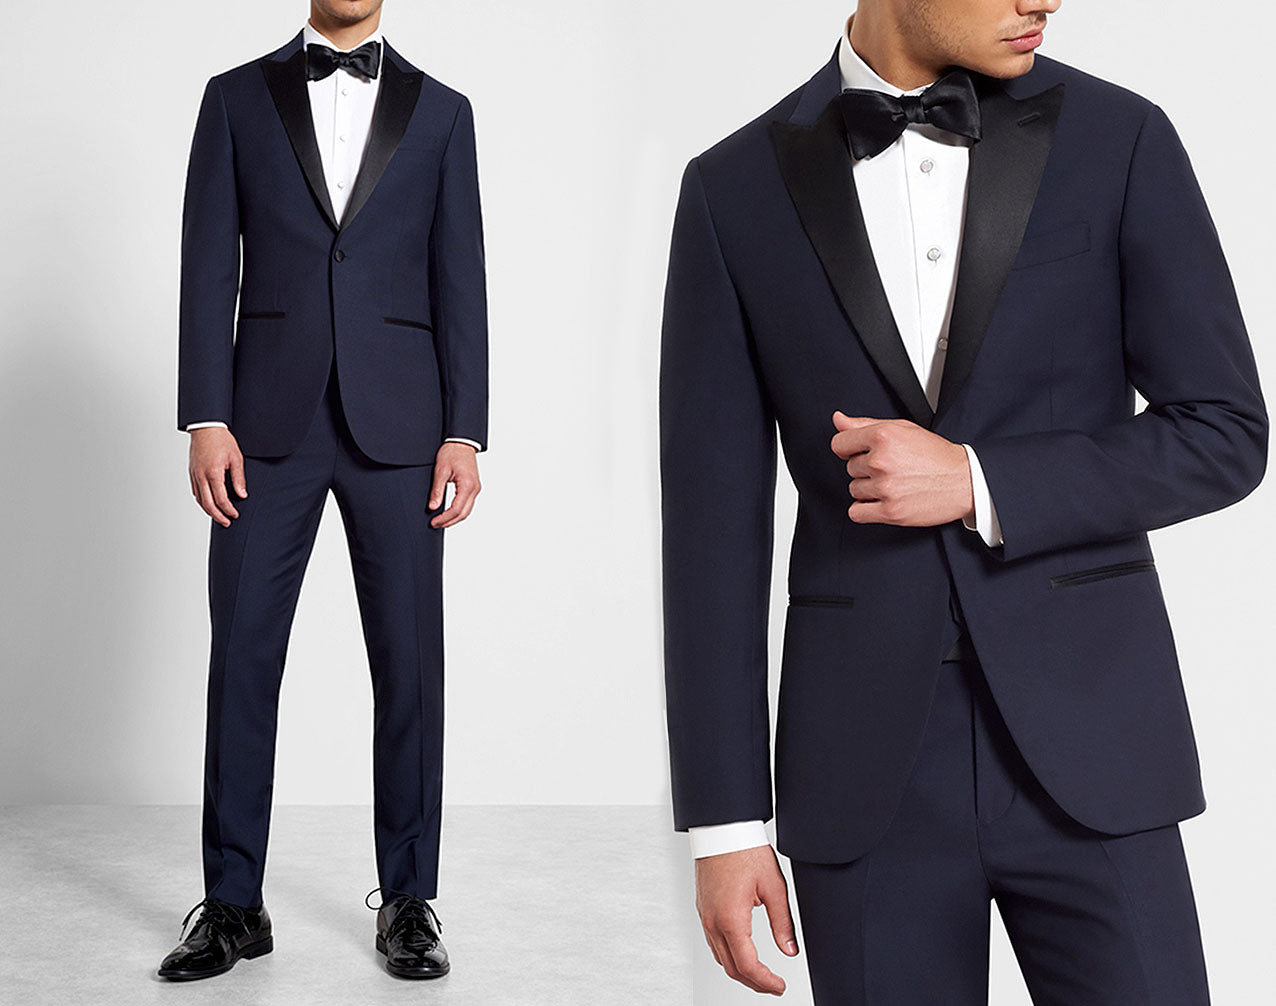 black tie dress code for men